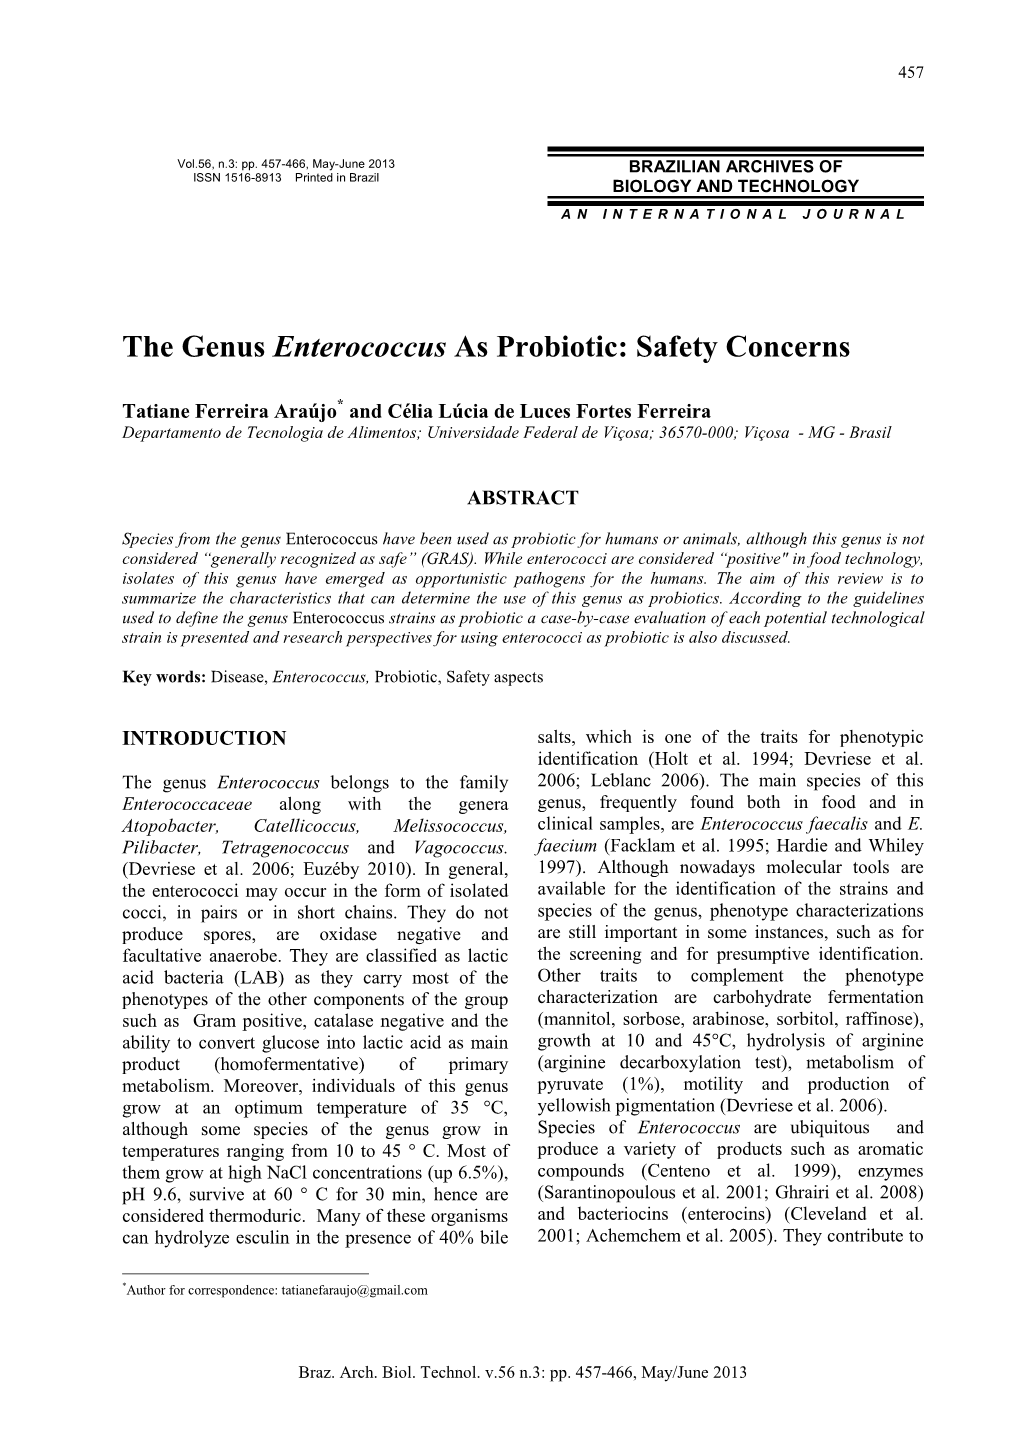 The Genus Enterococcus As Probiotic: Safety Concerns